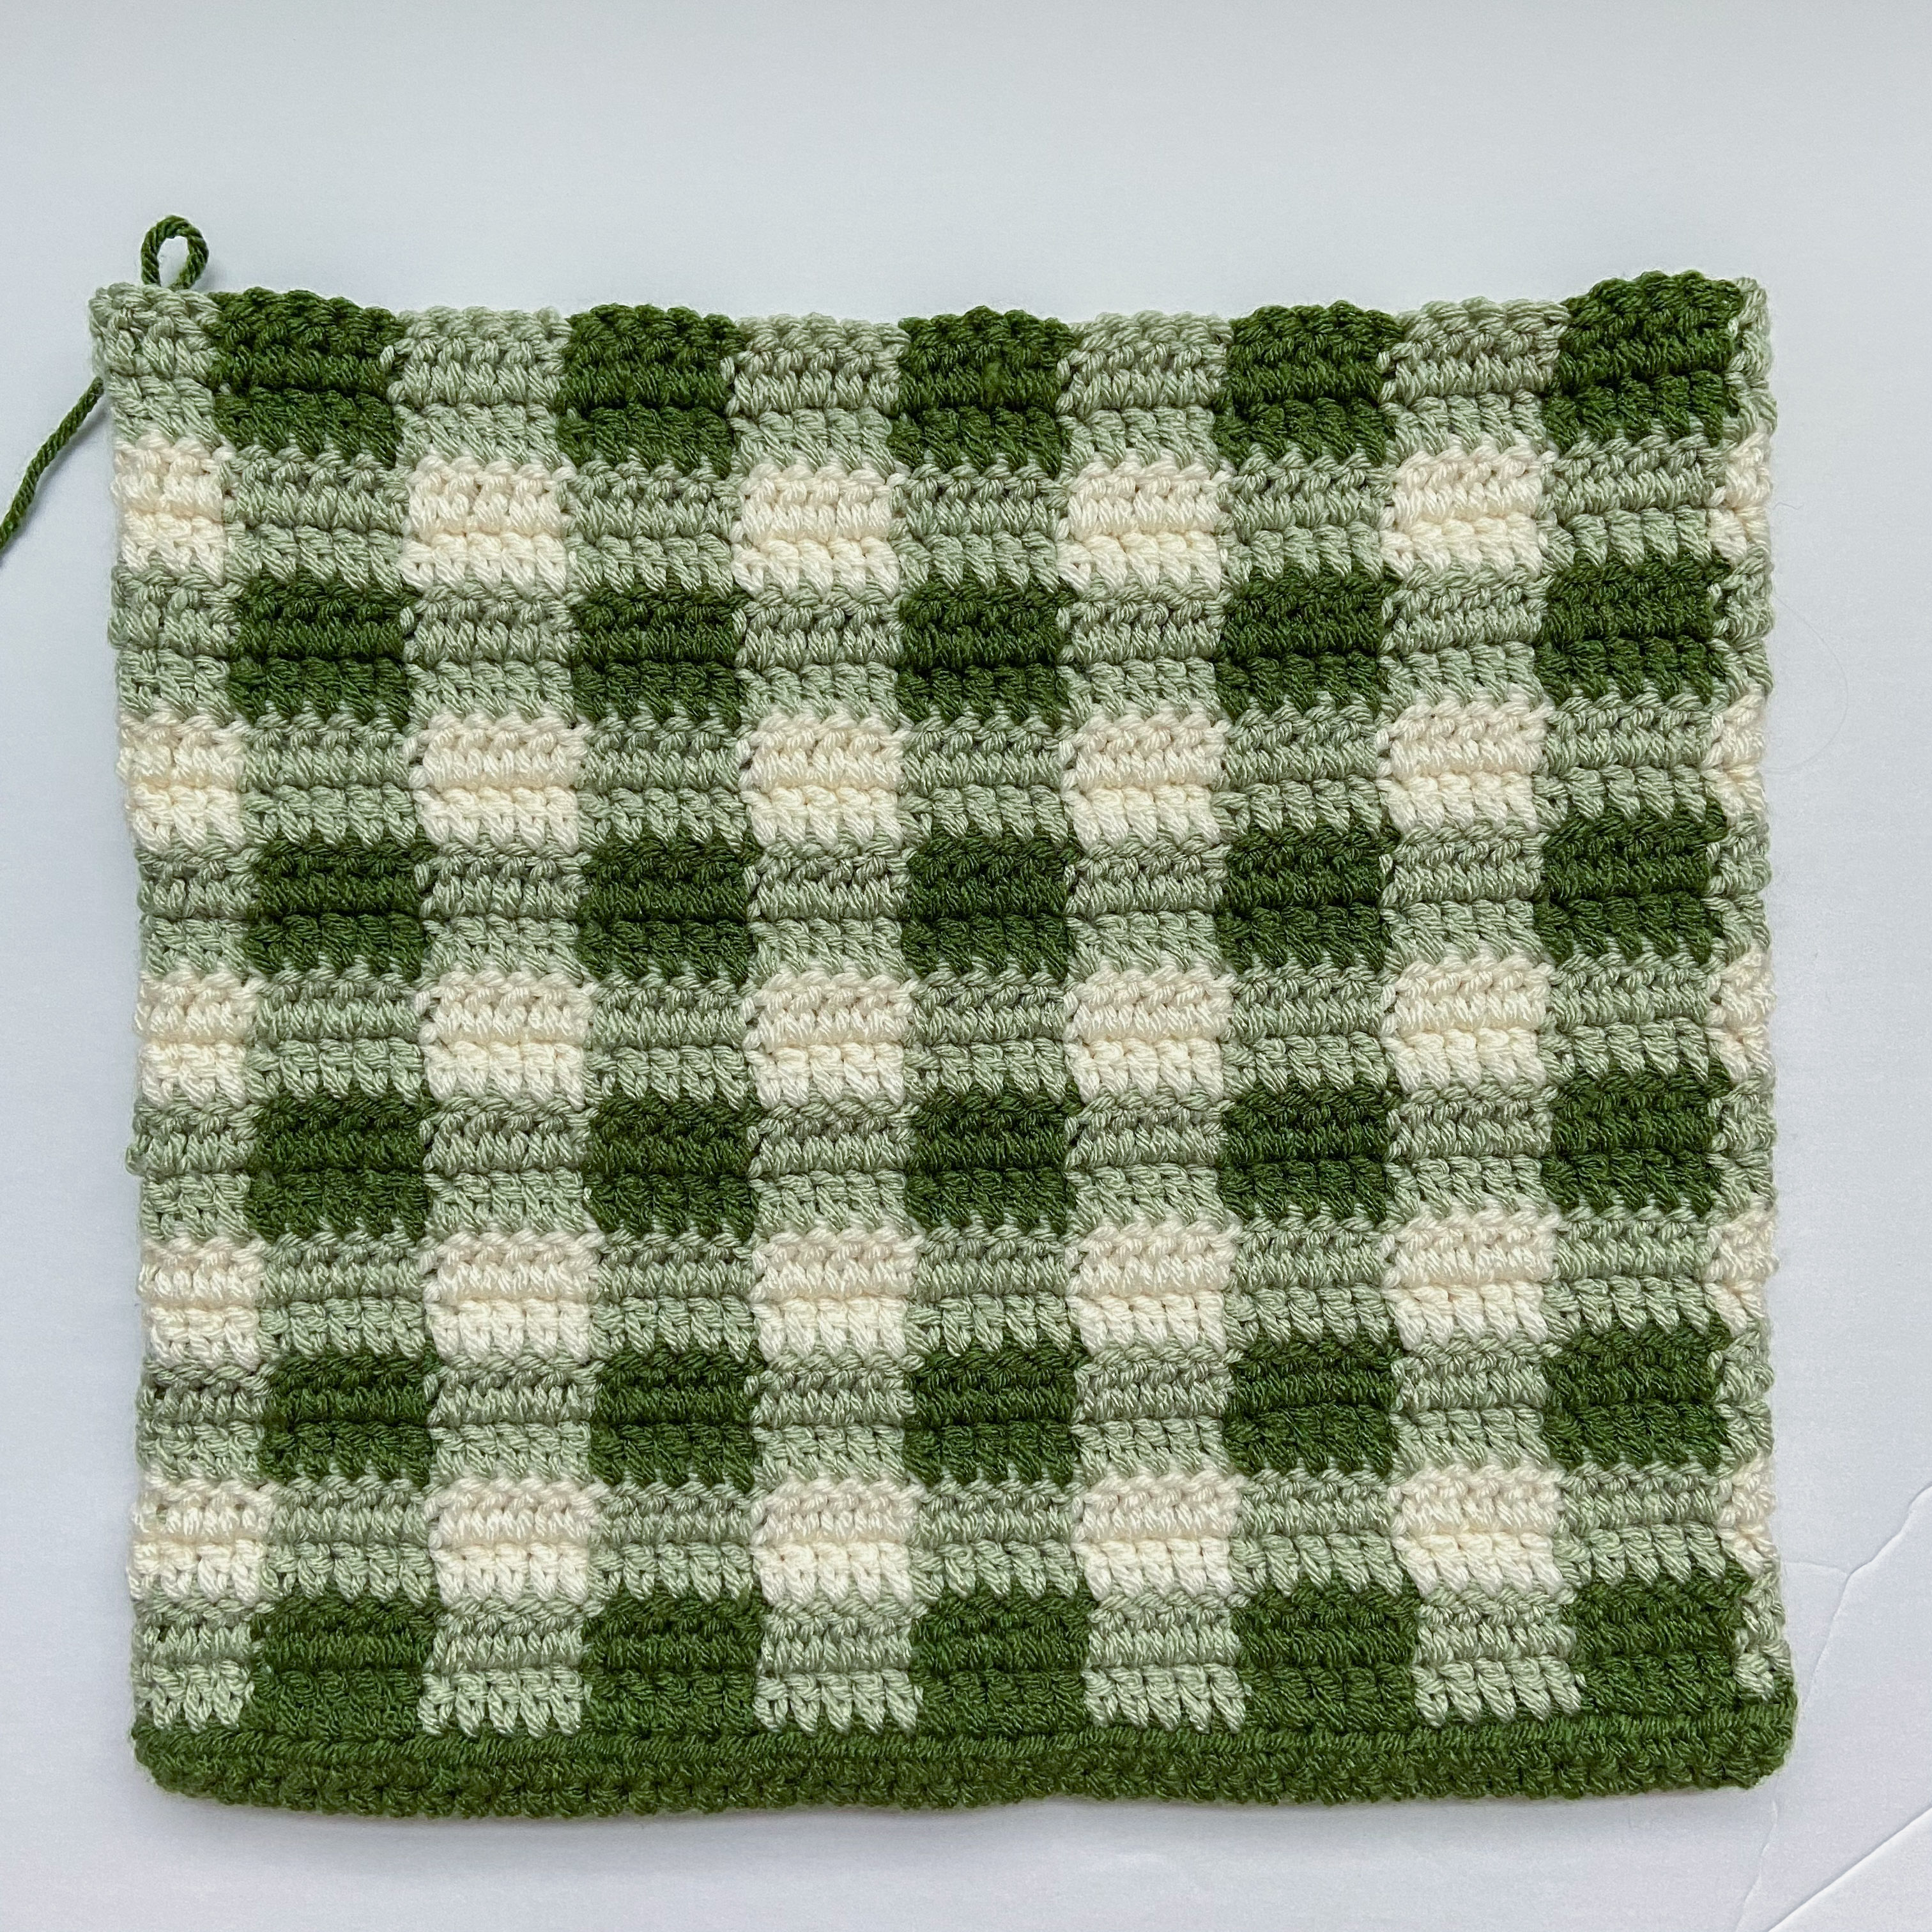 Simple Crochet Gingham Tote Bag - Free Pattern + Video Tutorial